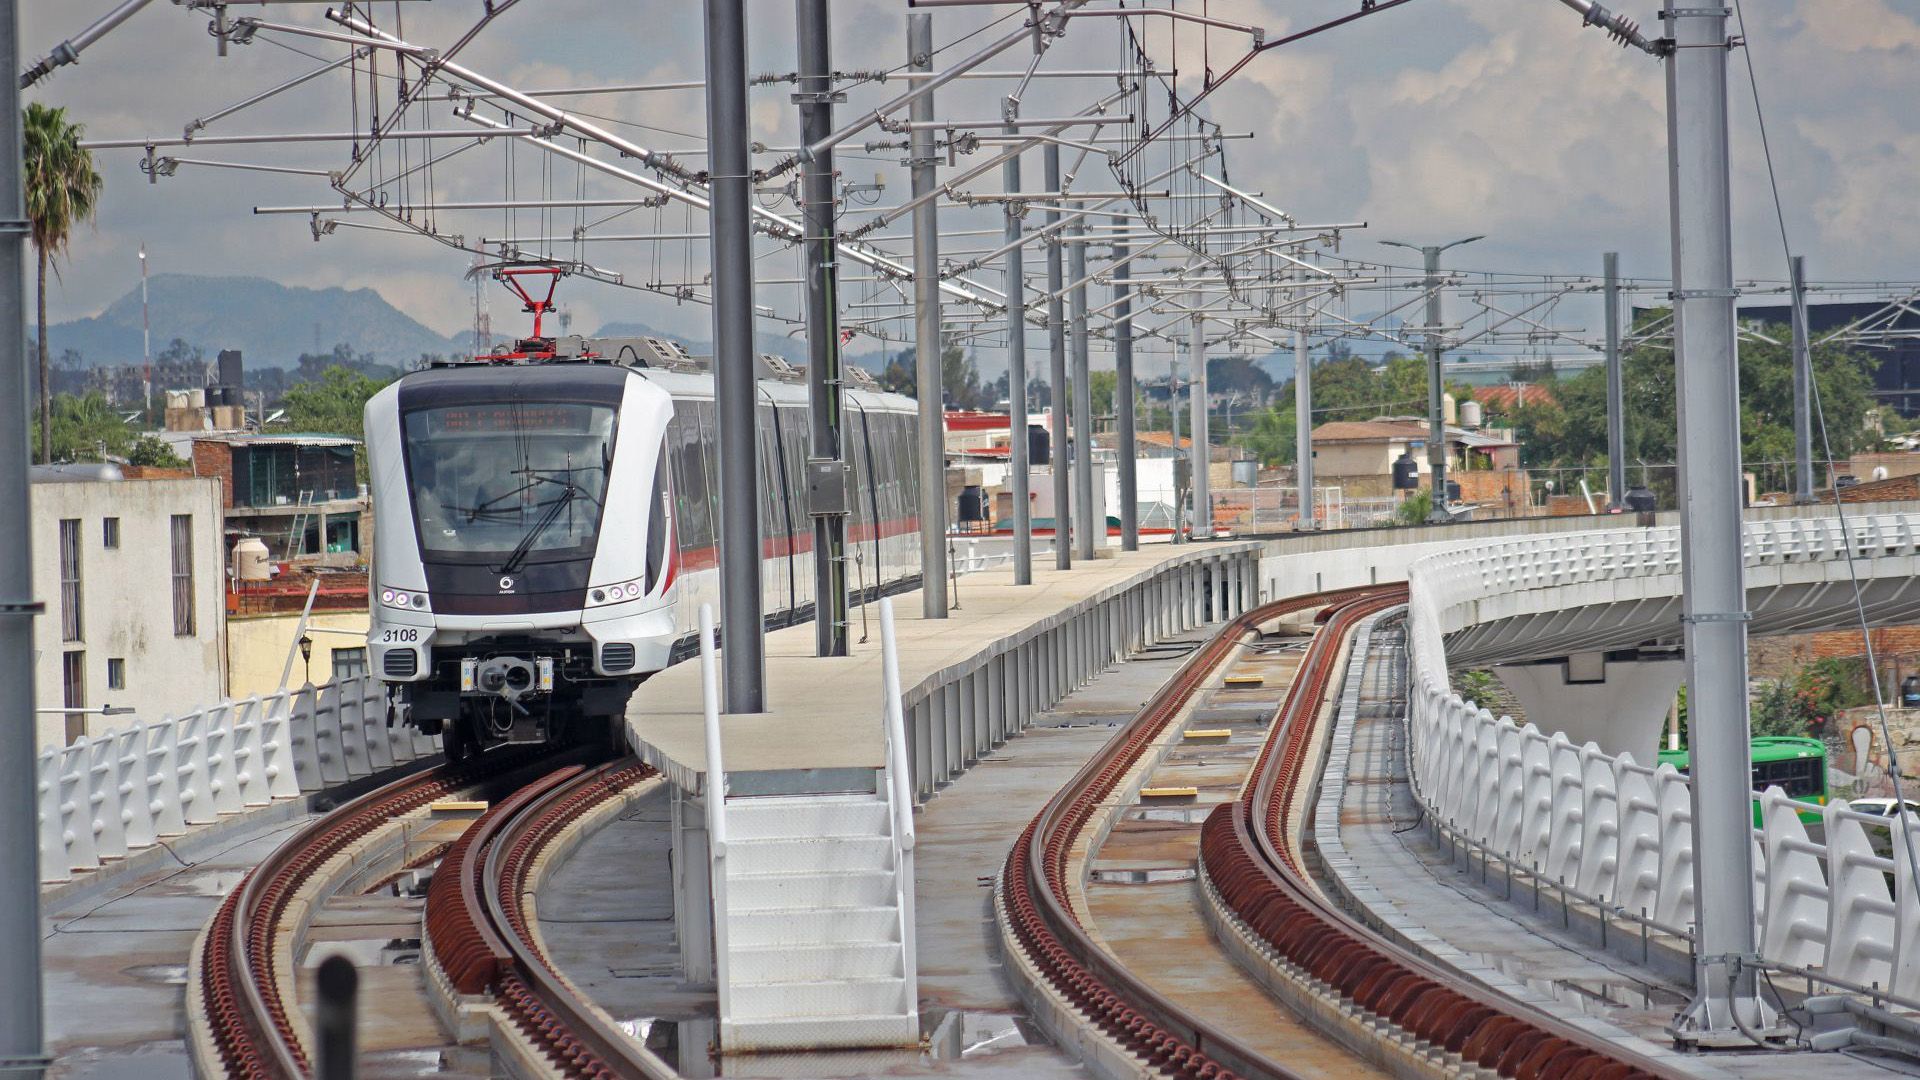 Vista general del tren ligero en operaciones durante el recorrido para medios de comunicación por las instalaciones del Sistema de Tren Eléctrico Urbano (SITEUR) de la Línea 3 (Foto: Cuartoscuro)